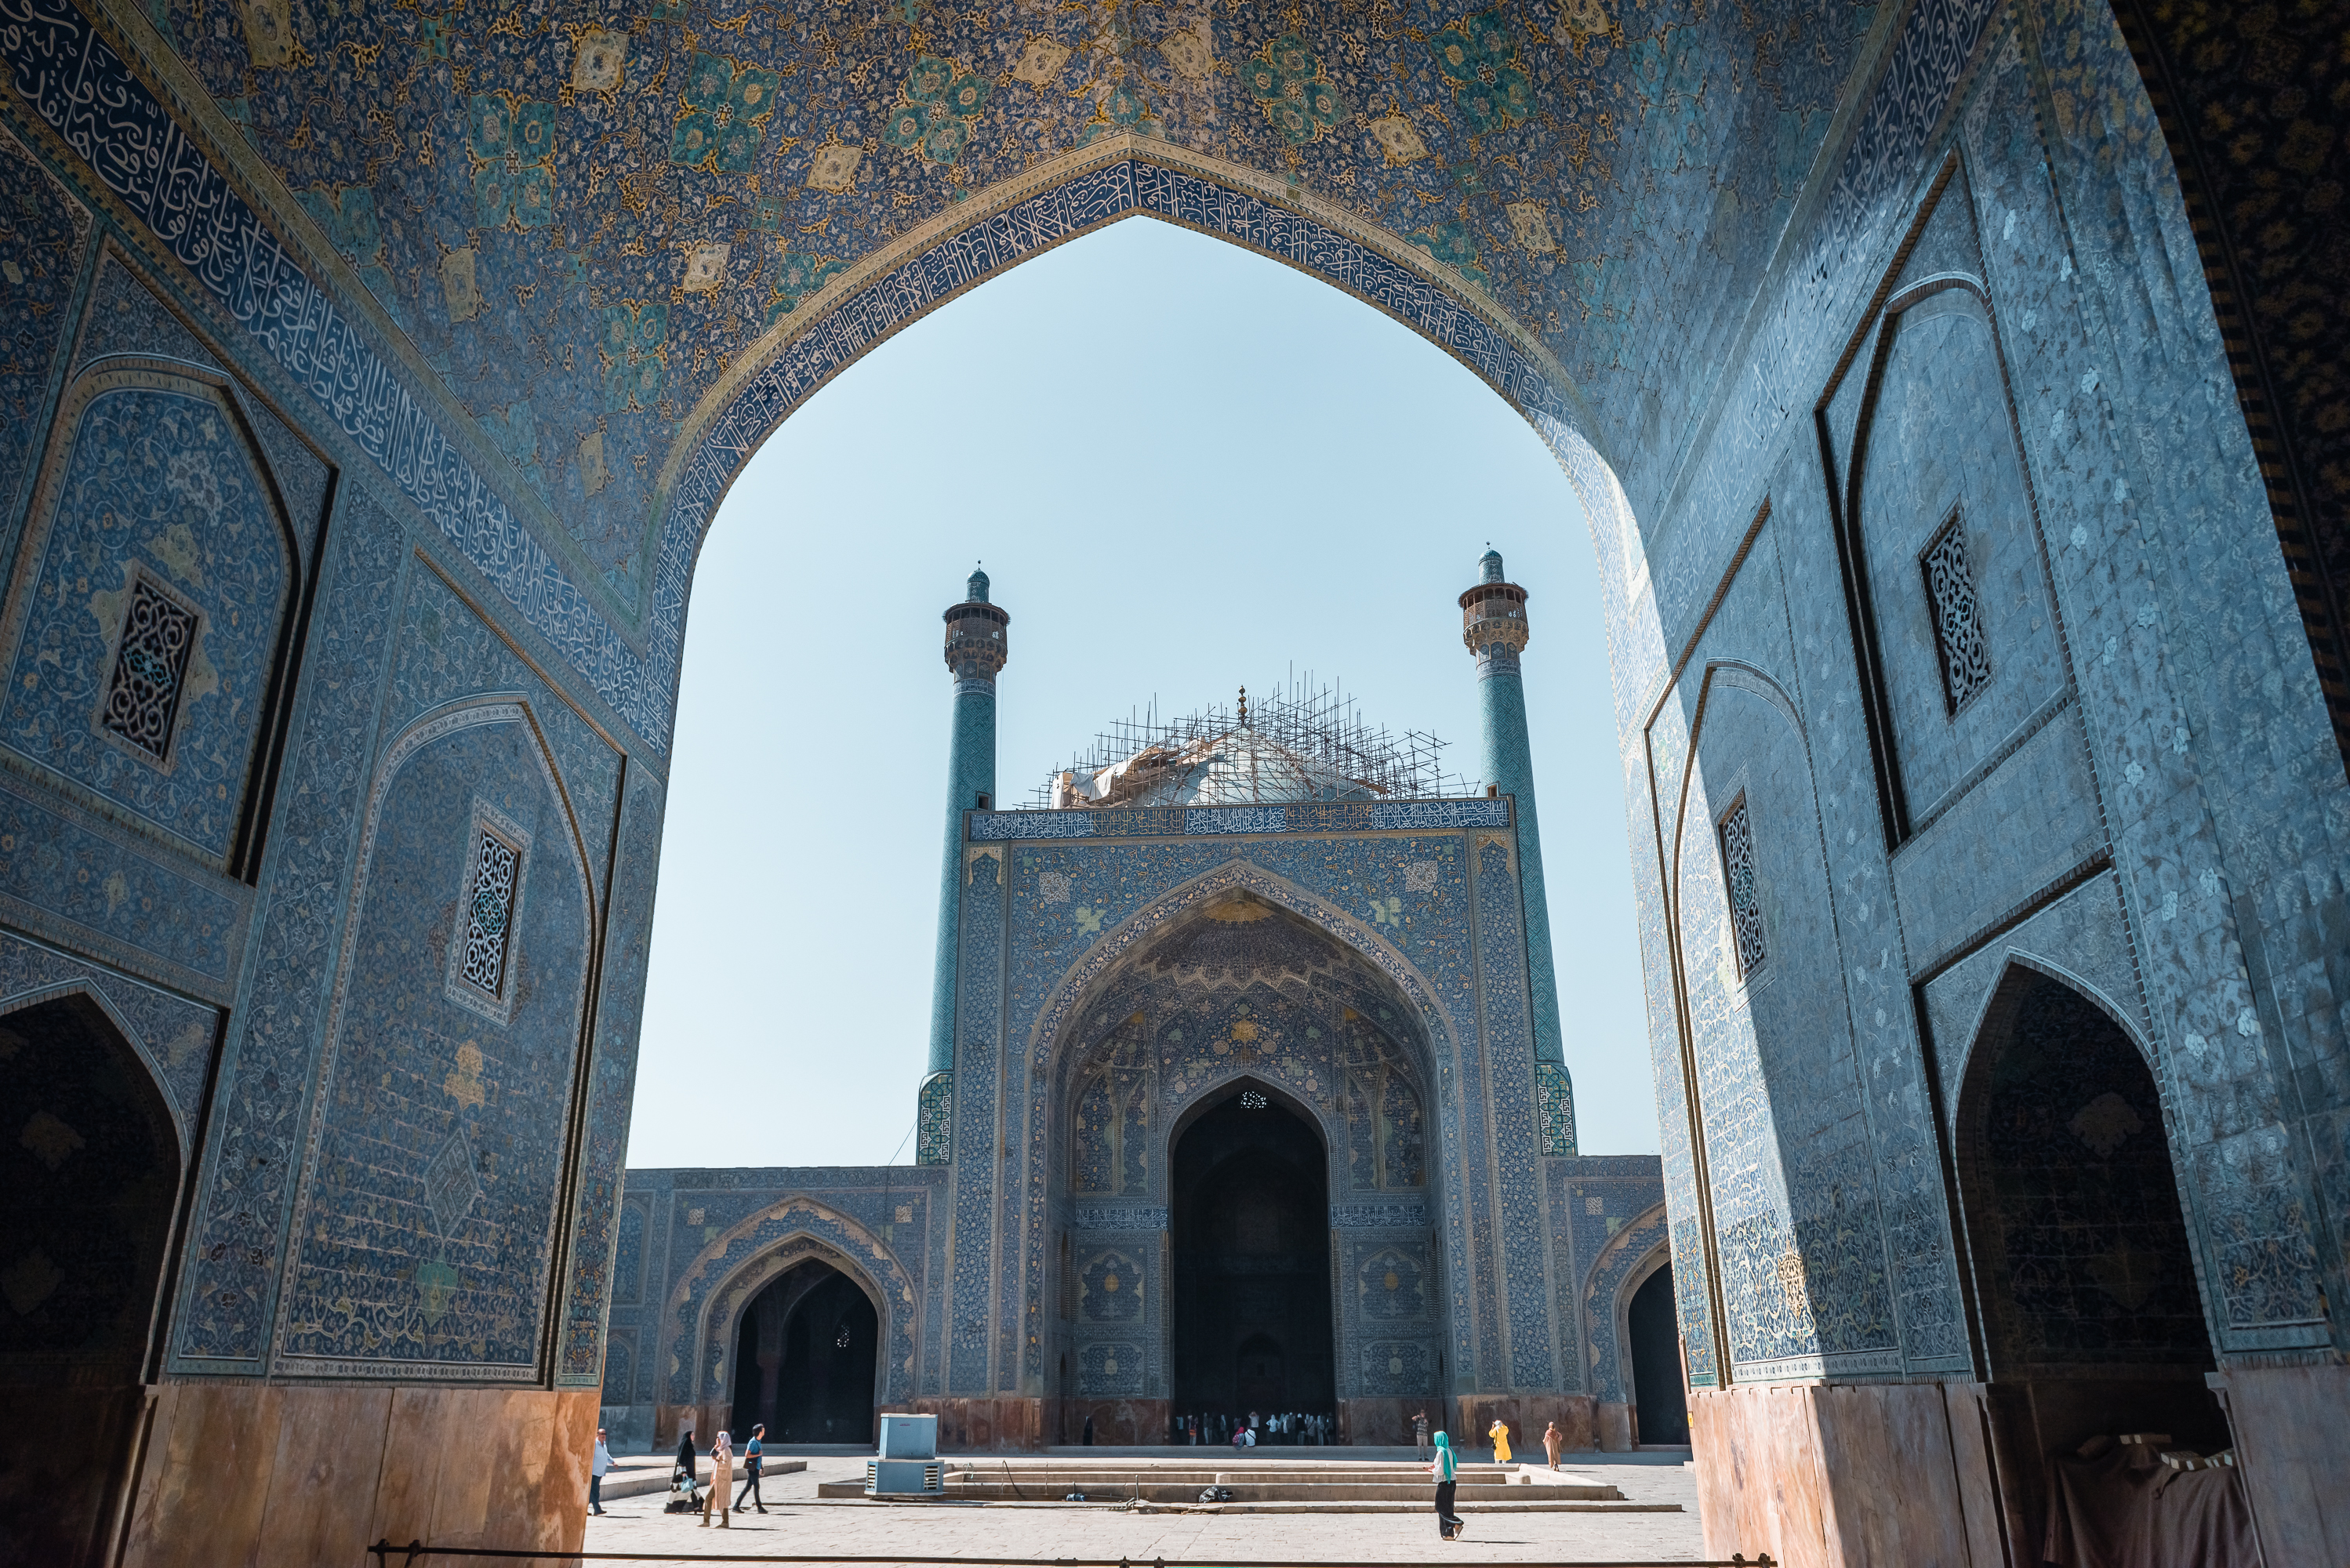 光是大门瓷砖就贴了4年，整整高达30多米，伊朗这座清真寺好神奇